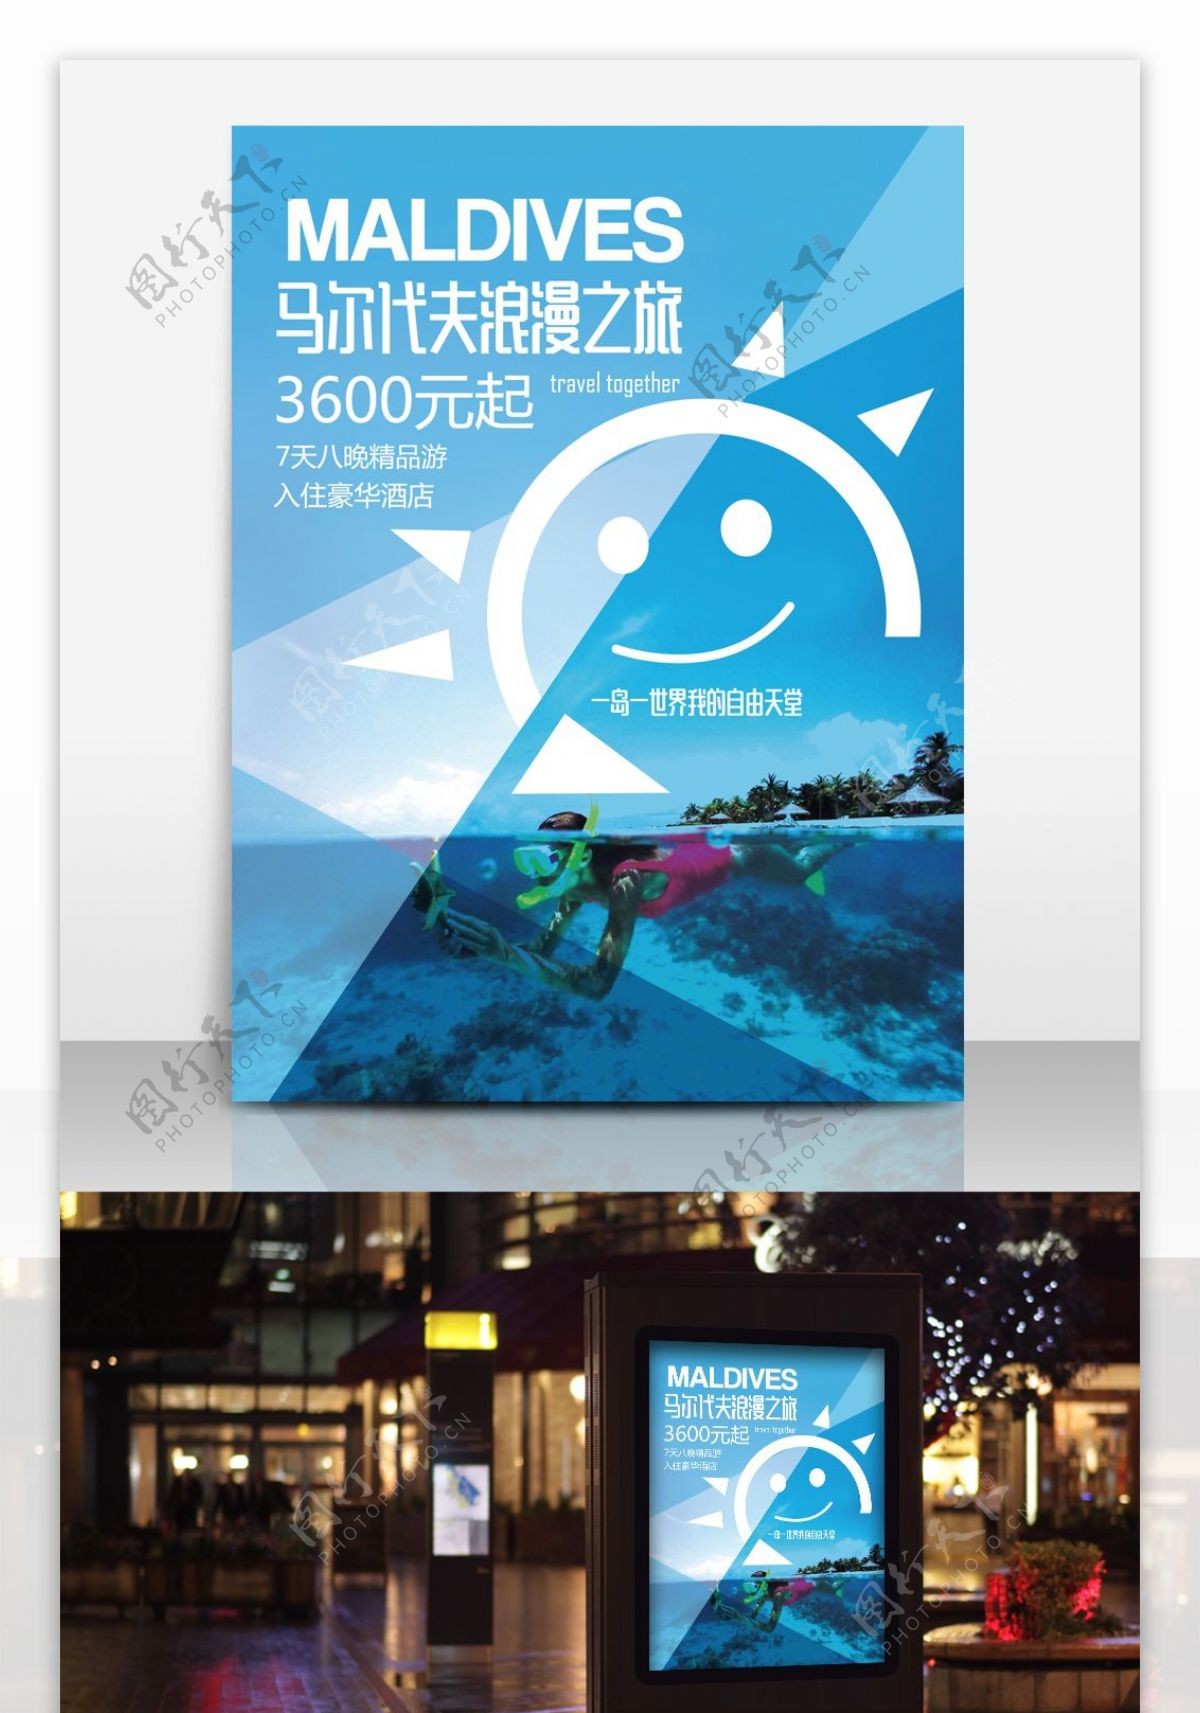 清新马尔代夫旅游海报设计